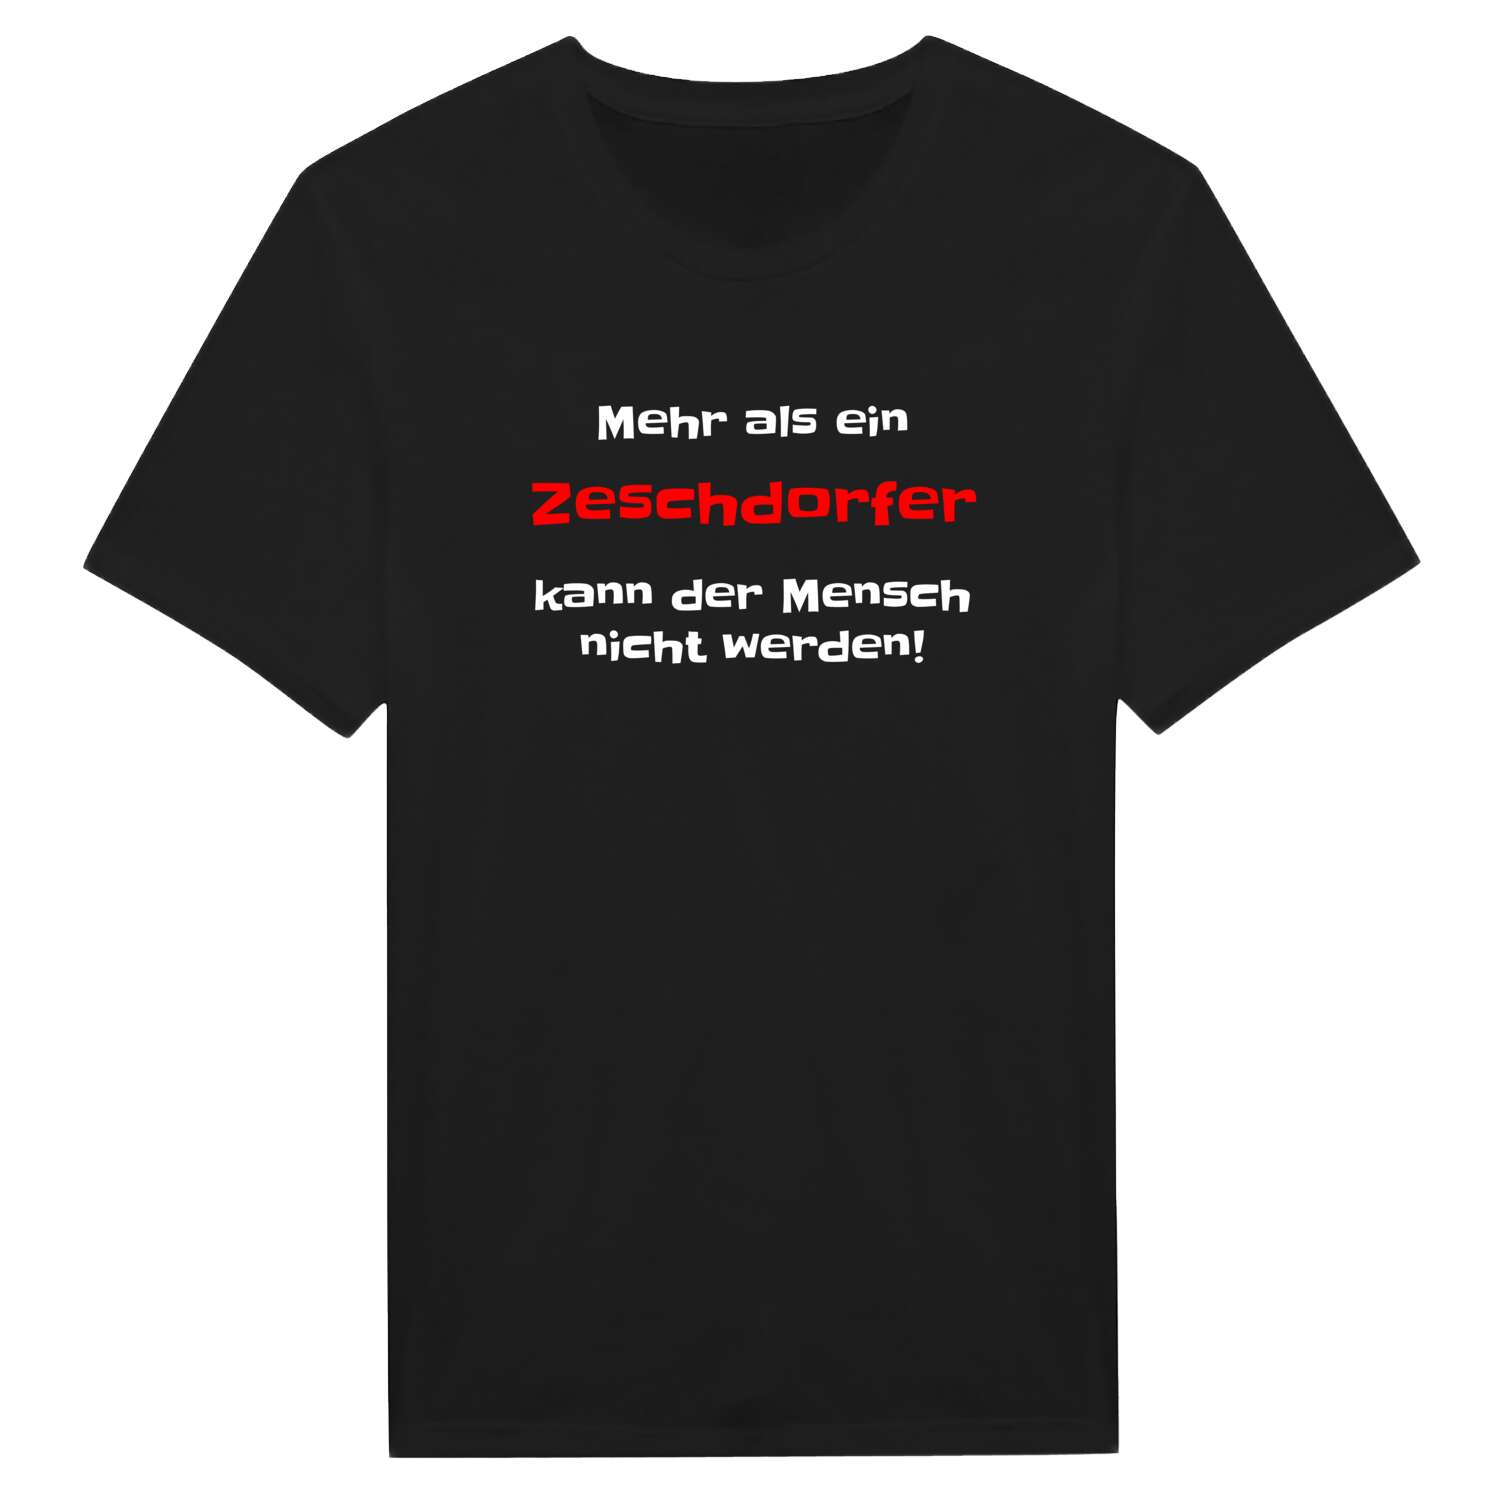 Zeschdorf T-Shirt »Mehr als ein«